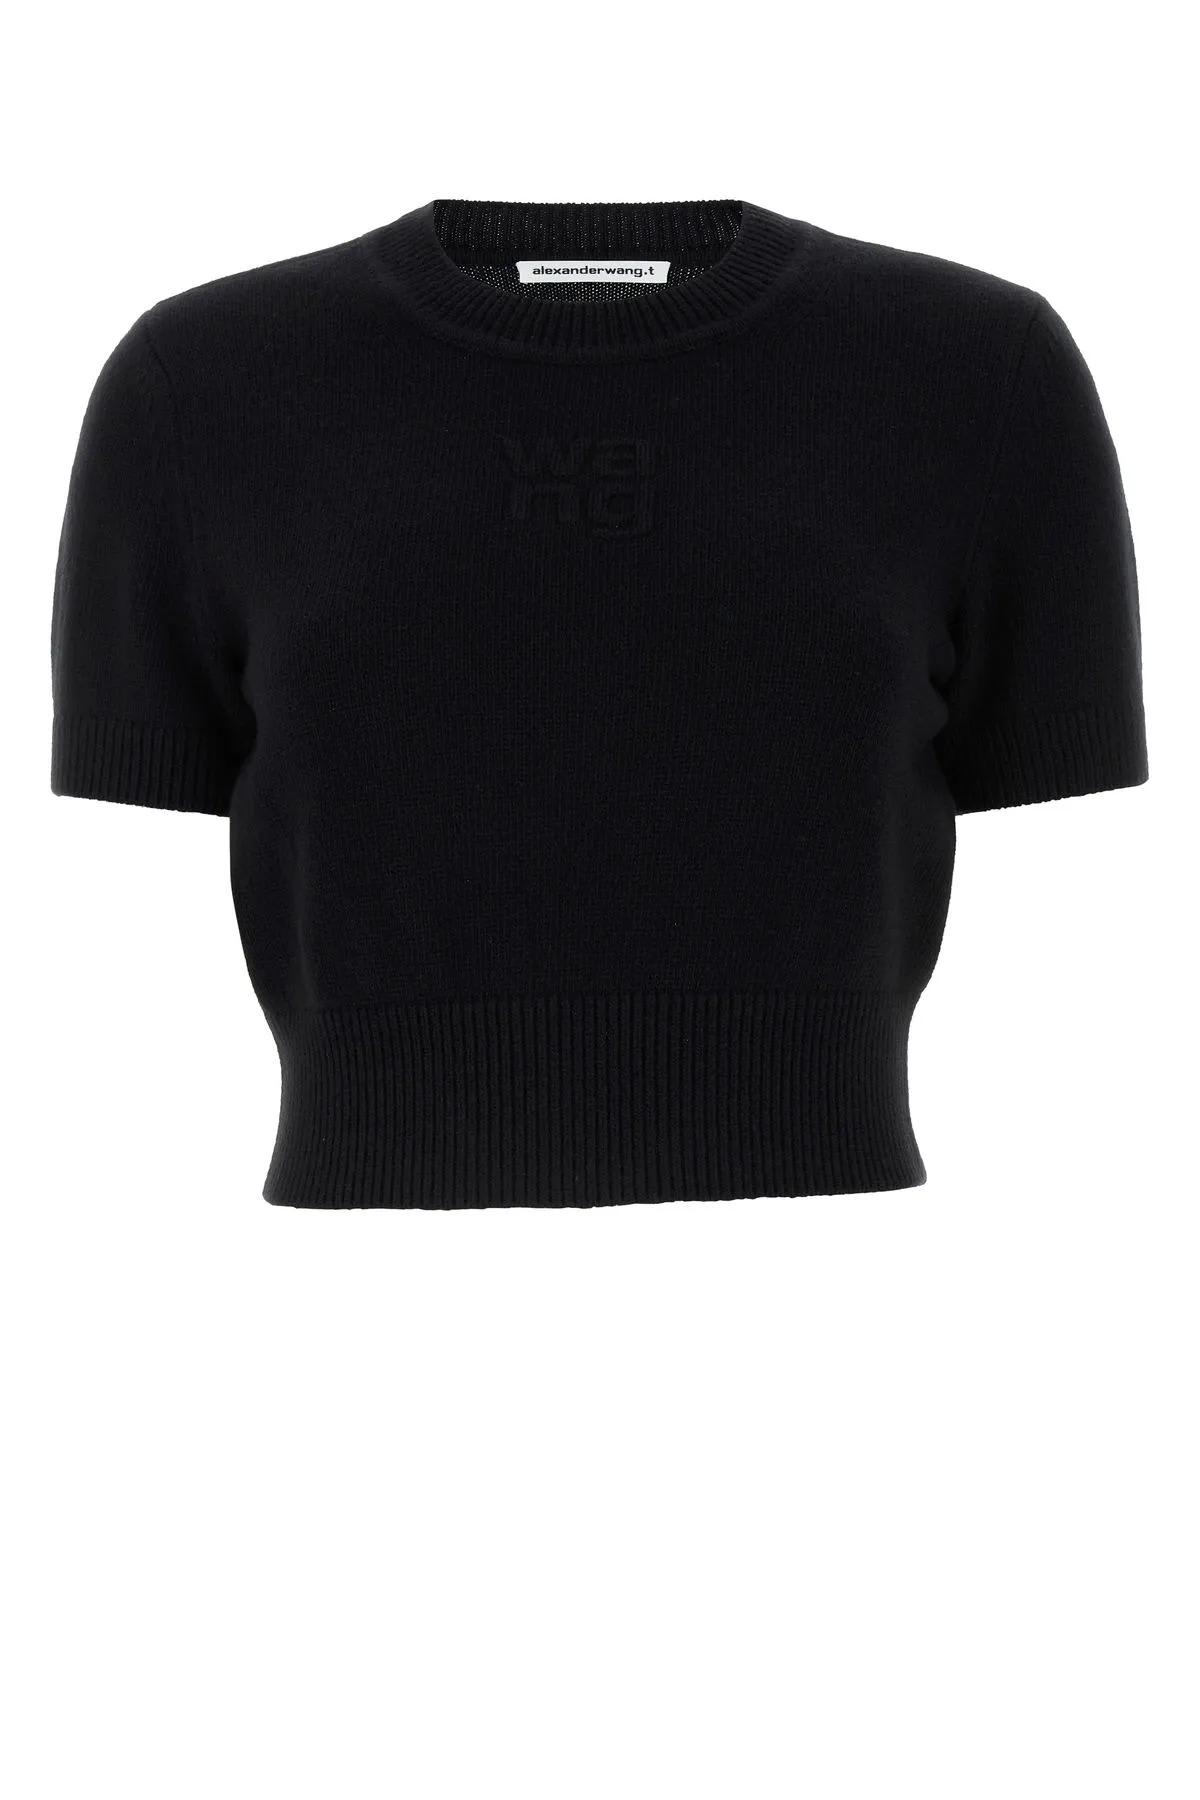 Shop Alexander Wang Black Cotton Blend Sweater